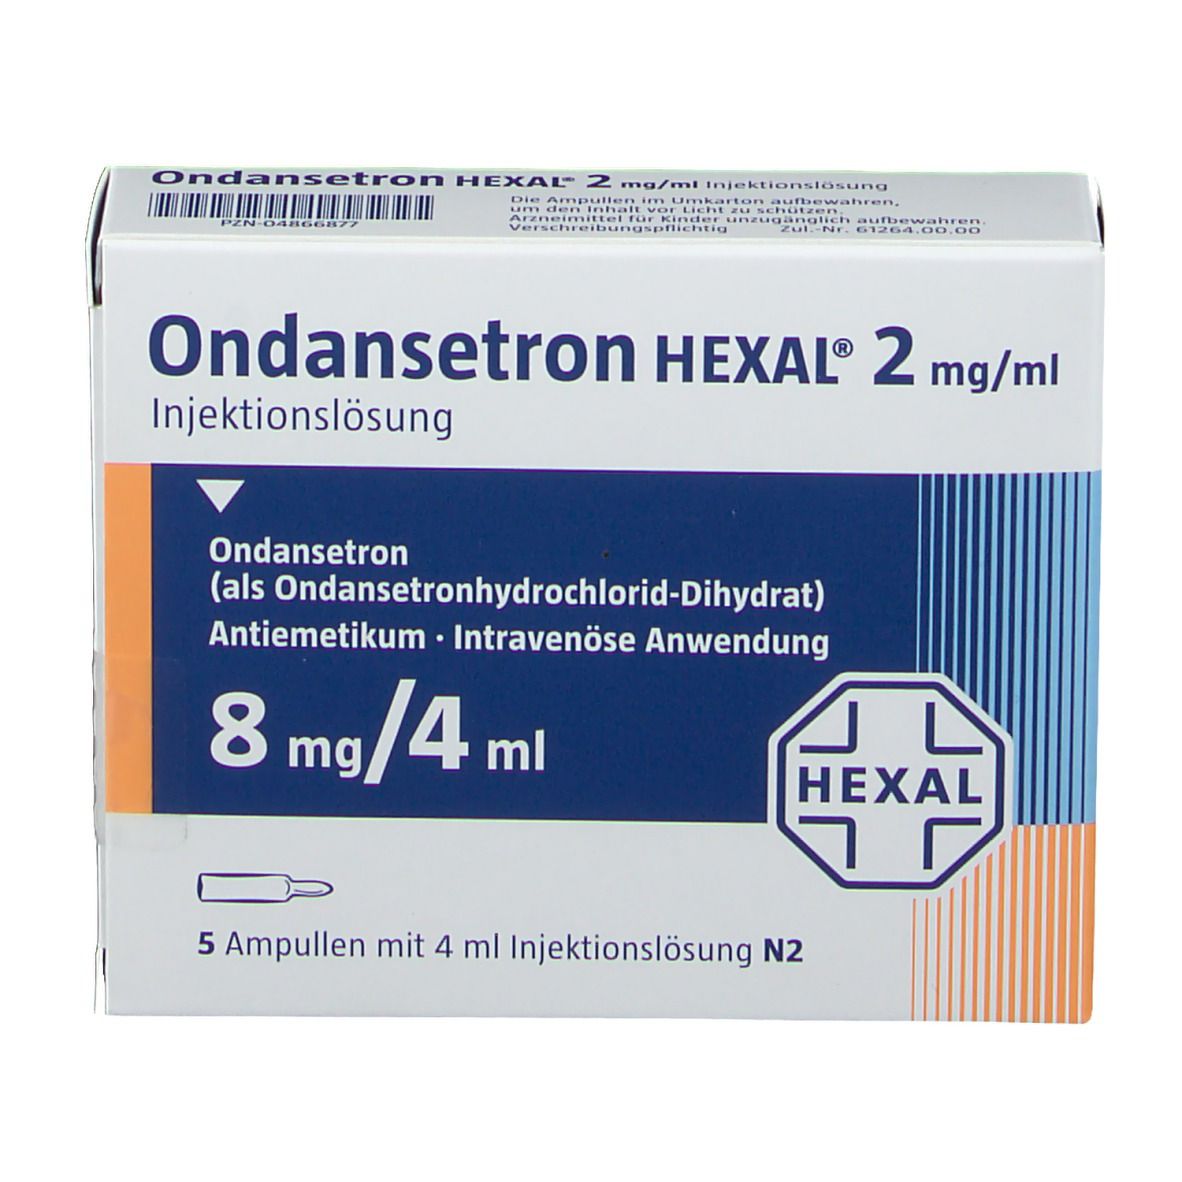 Ondansetron HEXAL® 8 mg